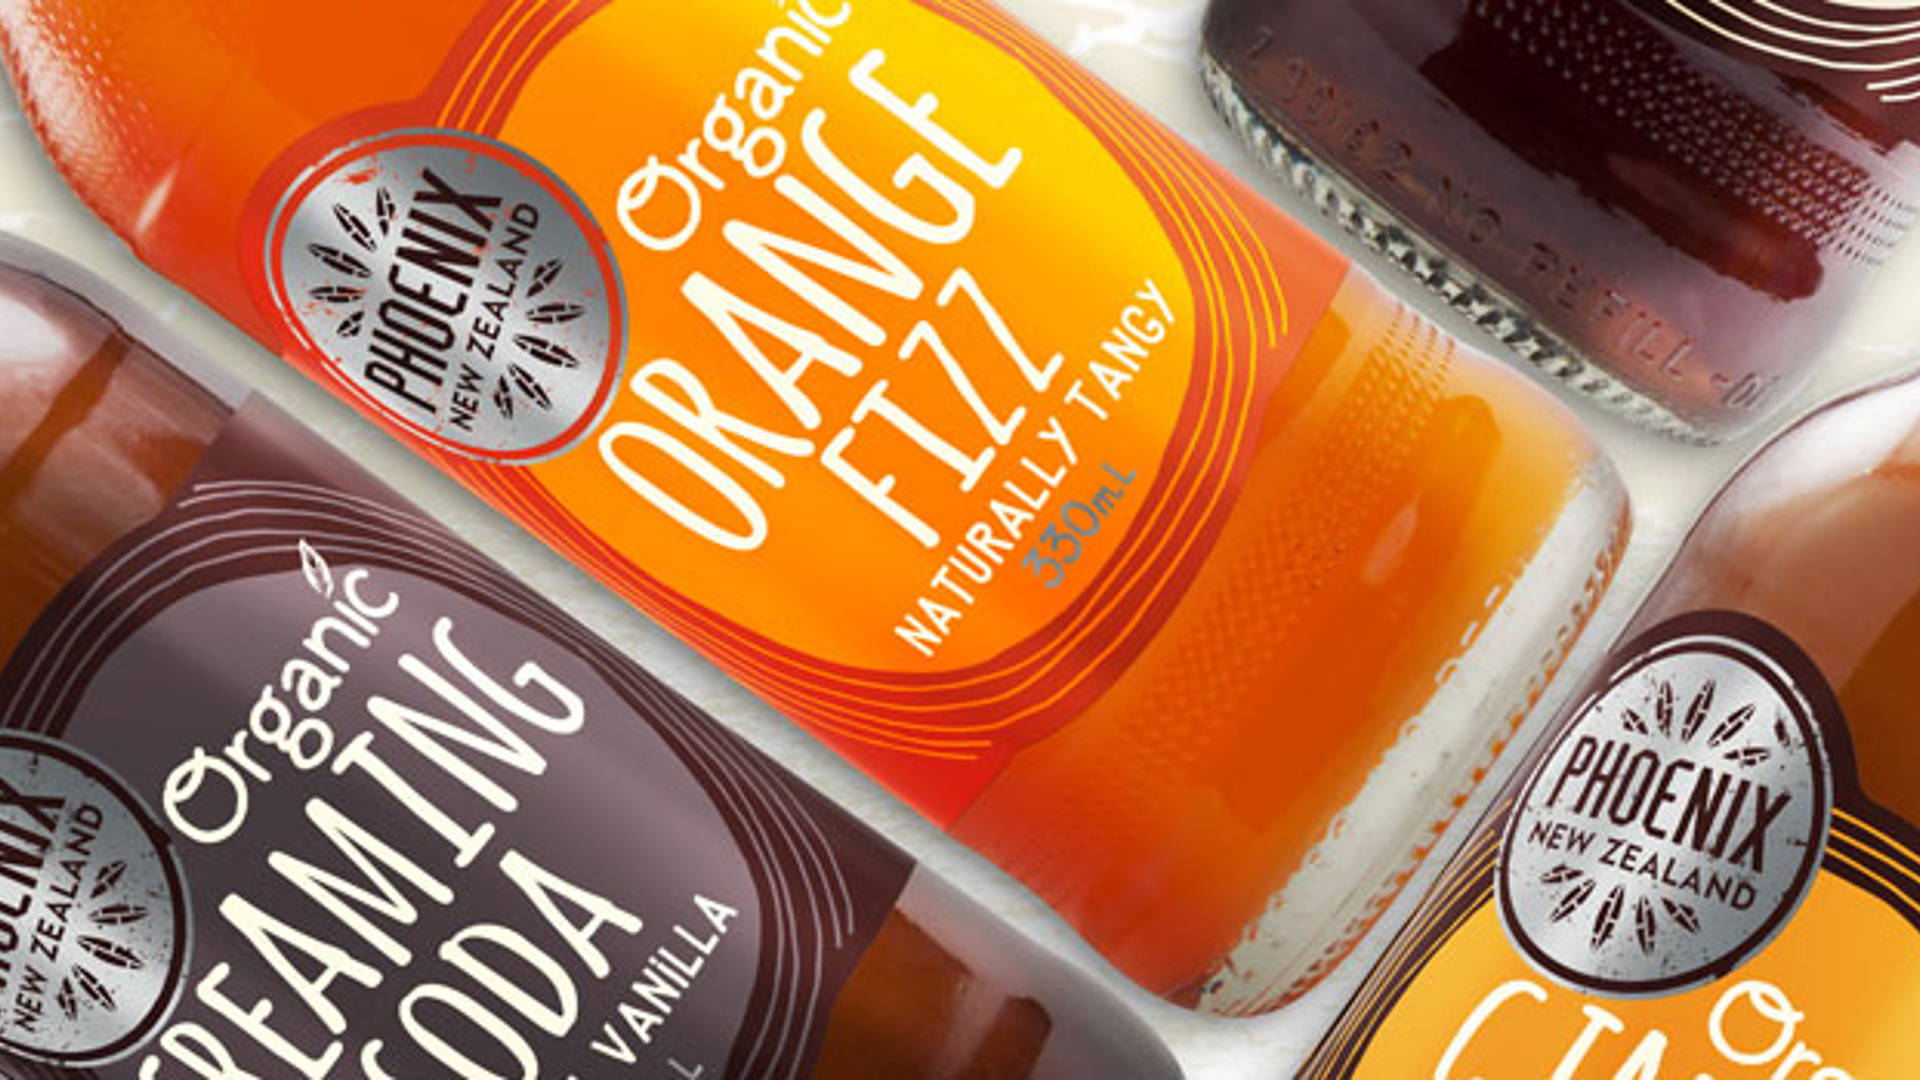 Phoenix Organic Beverage | Dieline - Design, Branding & Packaging